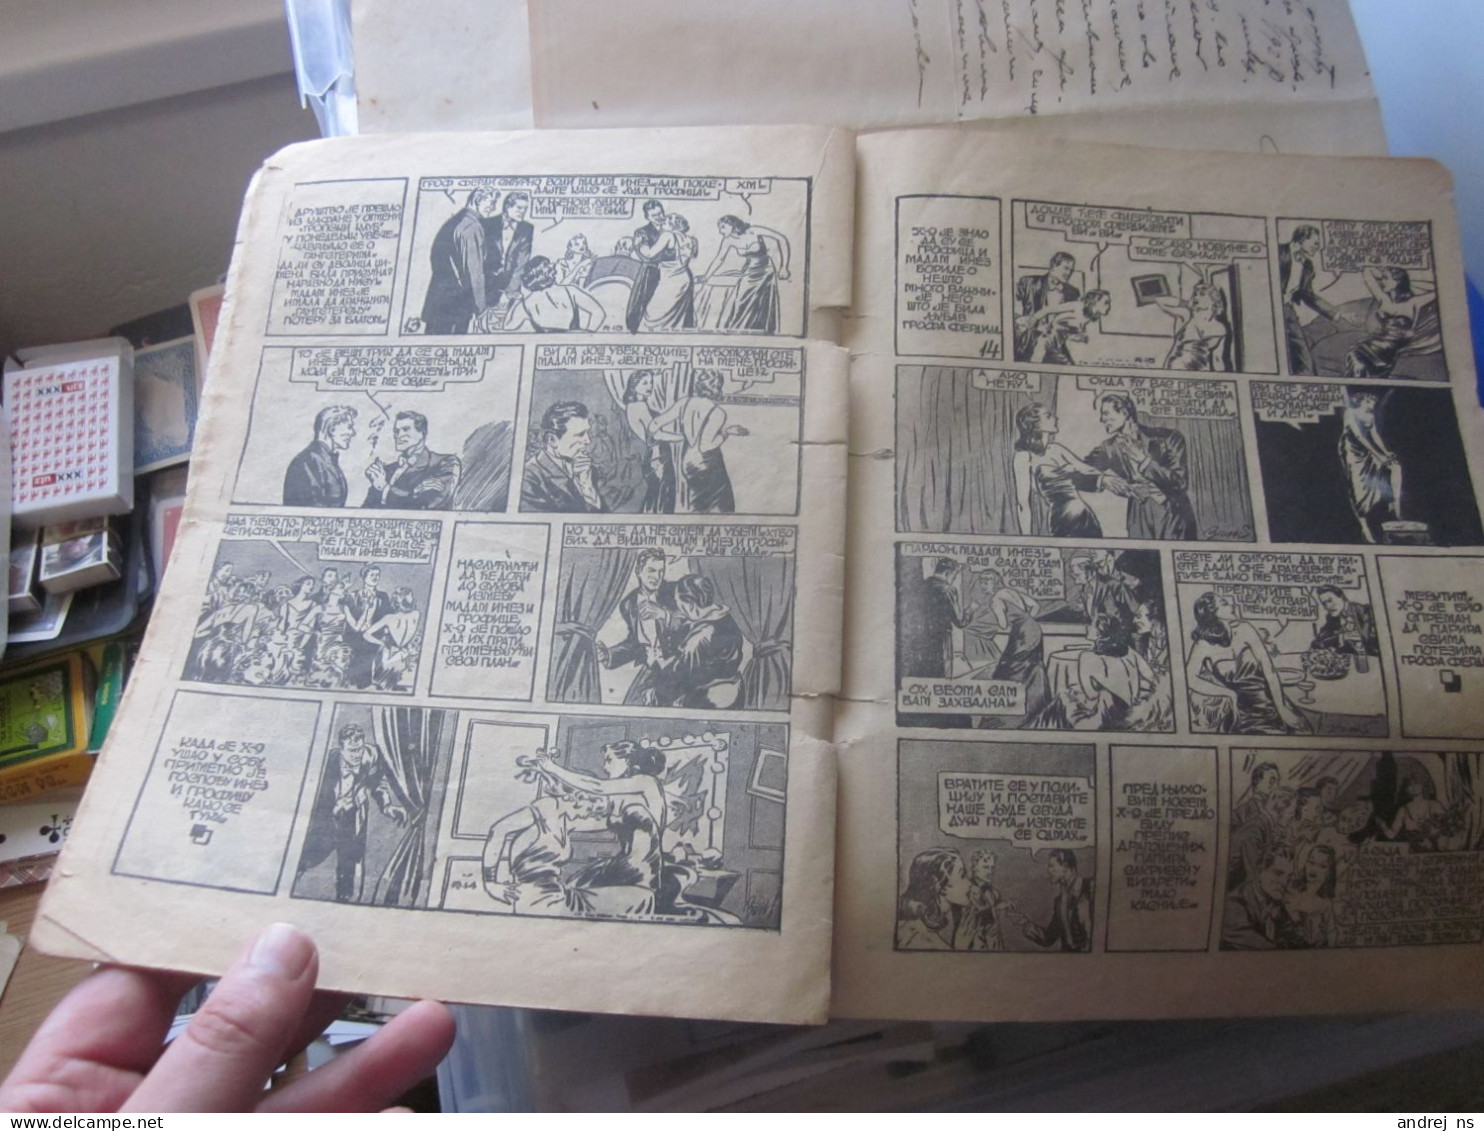 Zabavnik Ilustrovana Zabavna Revija U Stripu Illustrated Comic Book Teror Na Brodveju Beograd 1940 - Slavische Talen